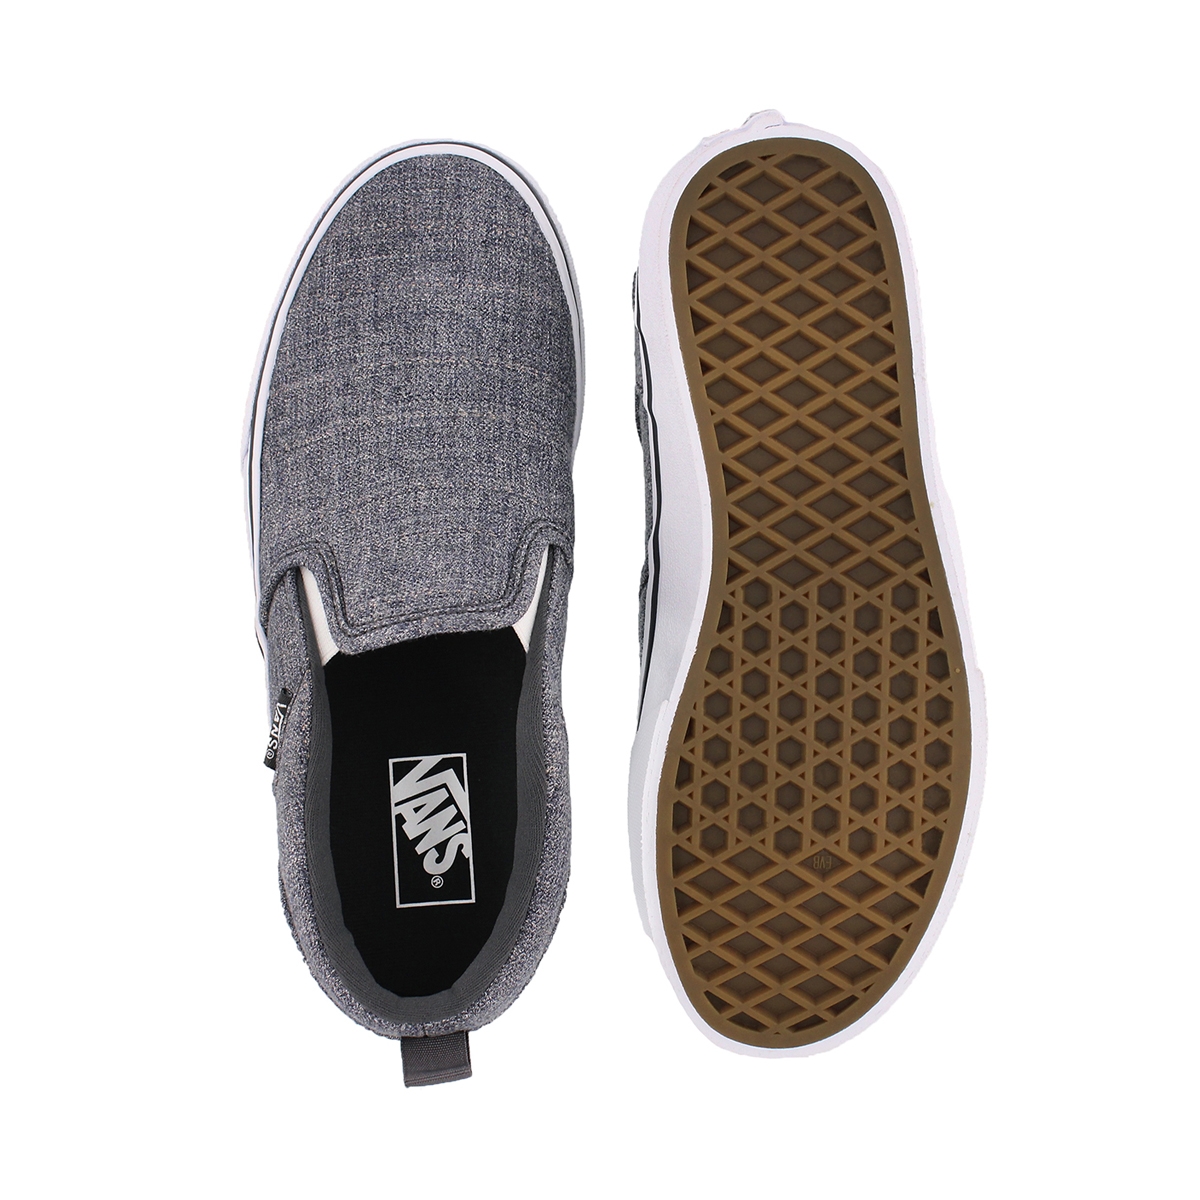 Vans' Boys' Asher Checkered Slip On Sneaker